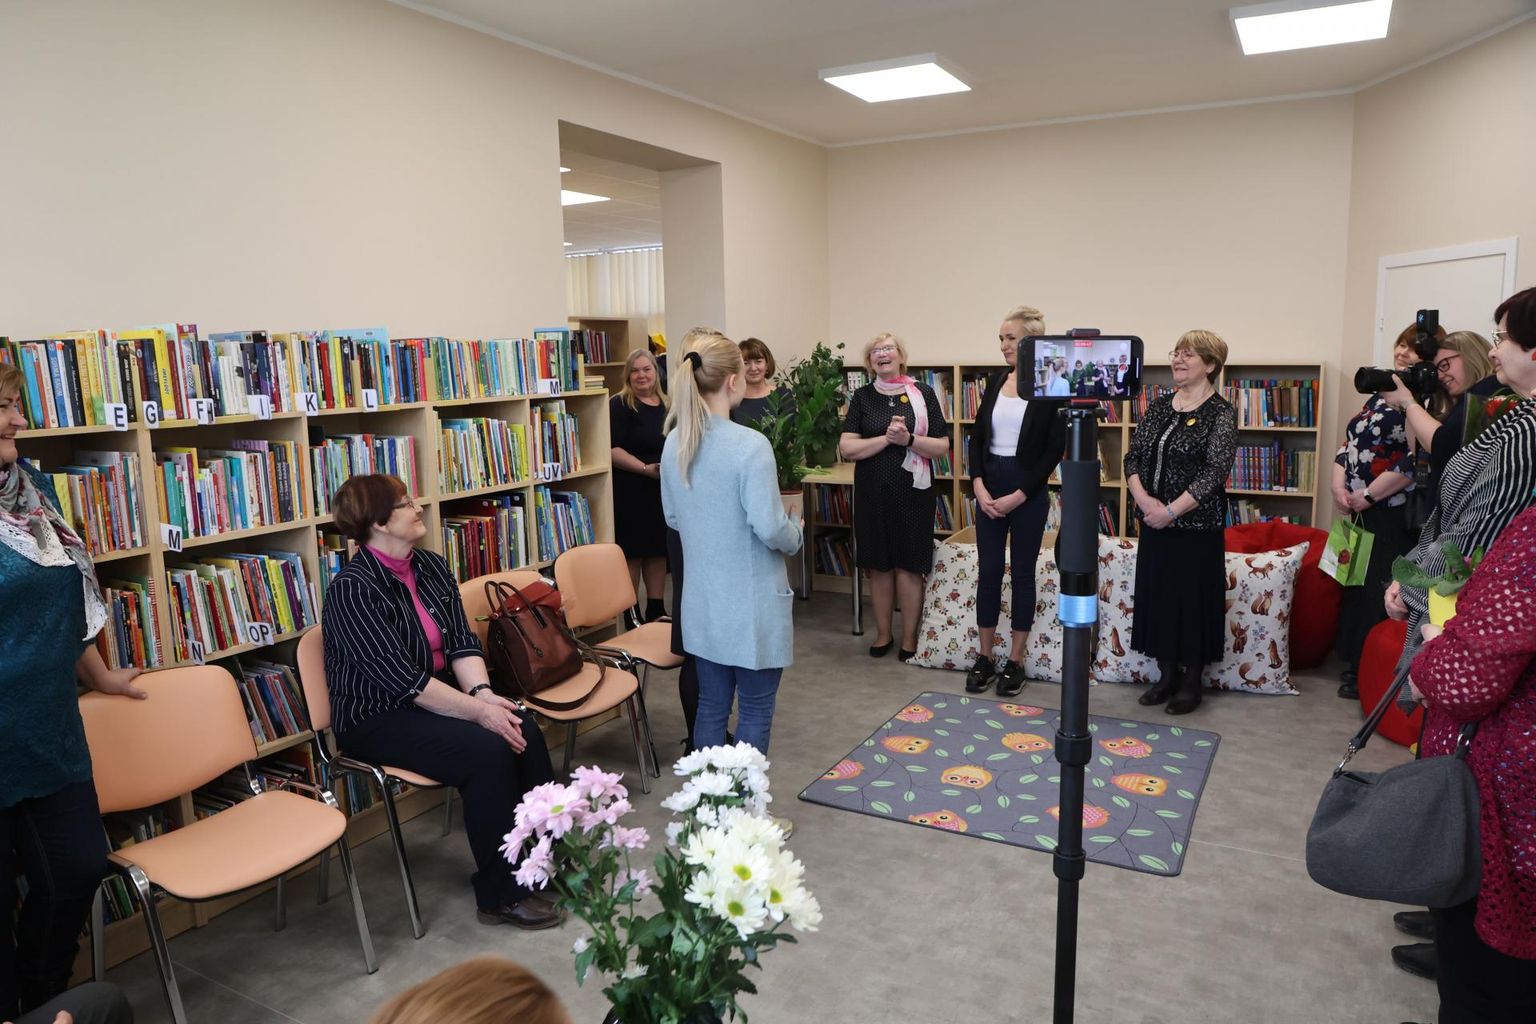 Kuigi Järvamaa raamatukogude nädal algab alles esmaspäeval, oli Koeru raamatusõpradel põhjust rõõmustada juba üleeile, kui avati pidulikult Koeru raamatukogu.